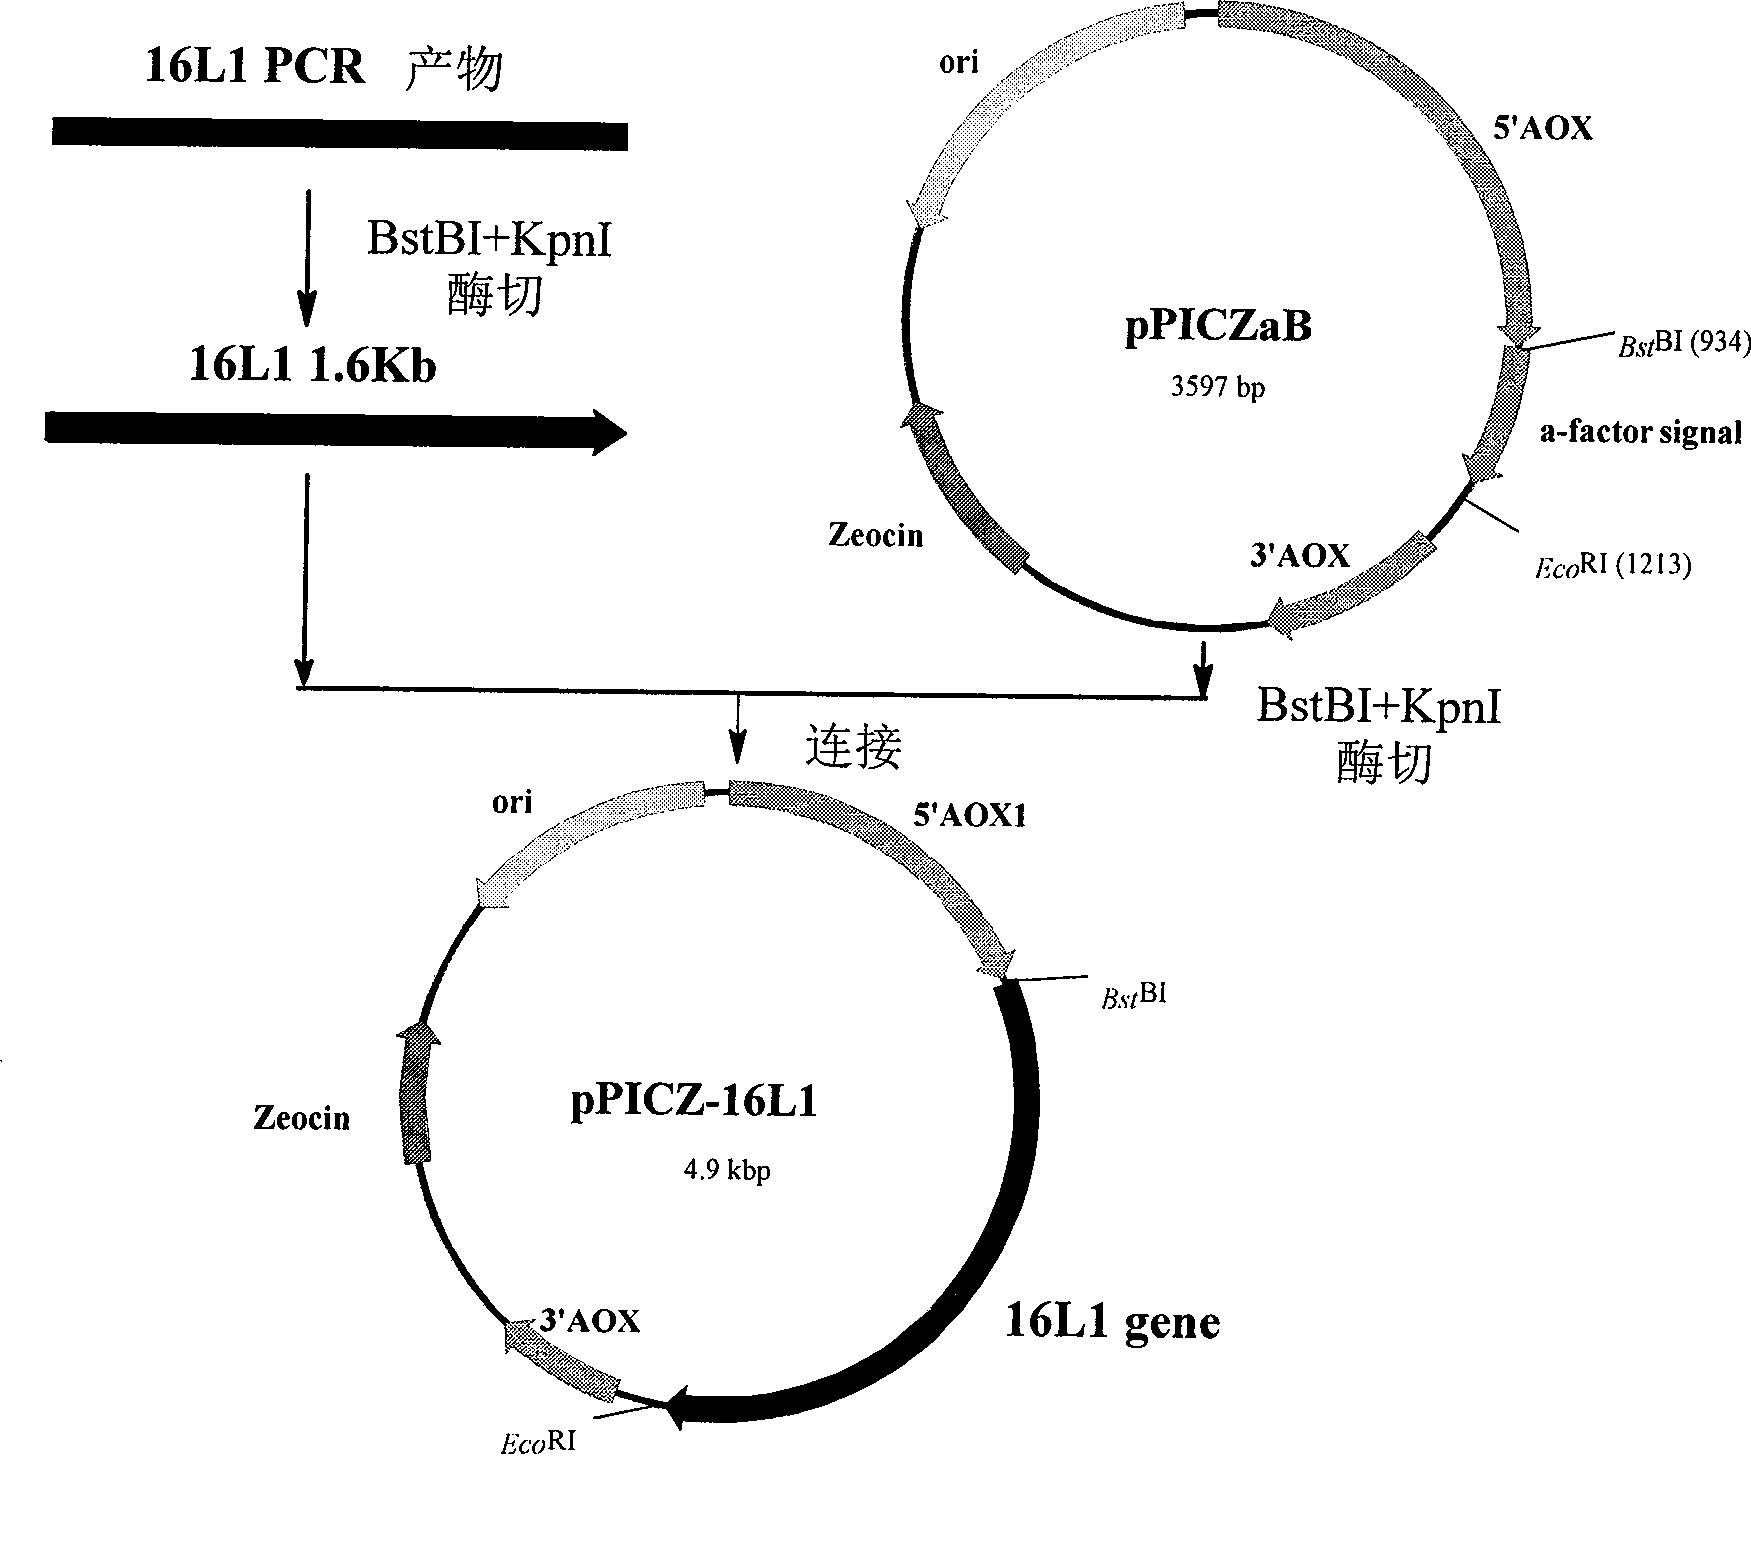 16 type human papilloma virus major capsid protein L1 gene